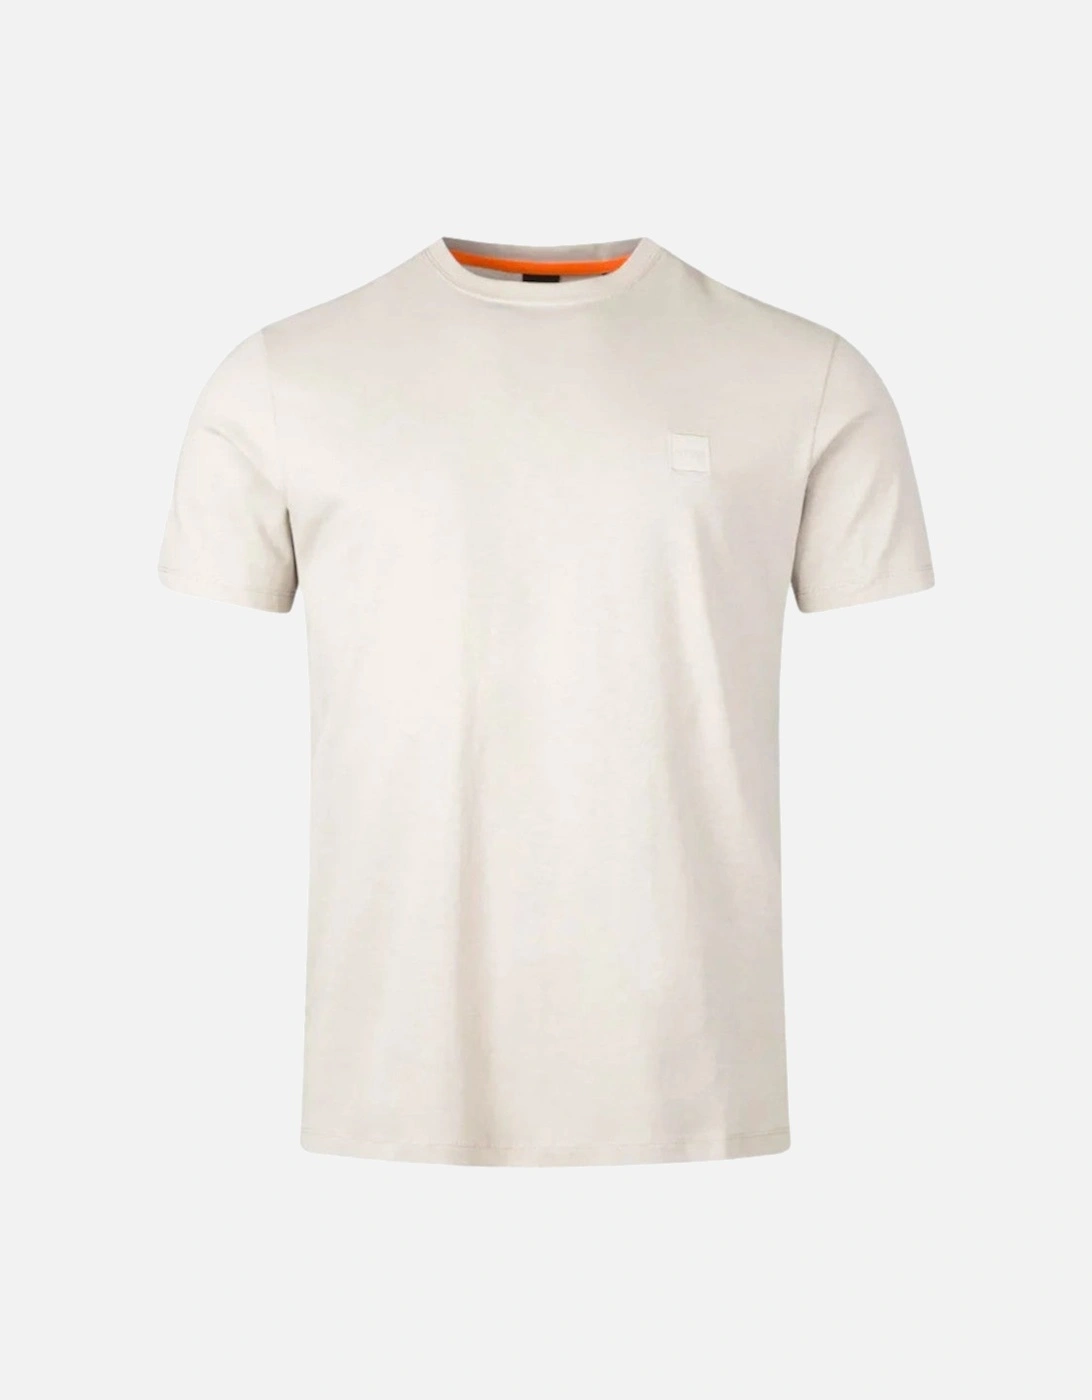 Orange Tales T-Shirt 10242631 271 L Beige, 2 of 1